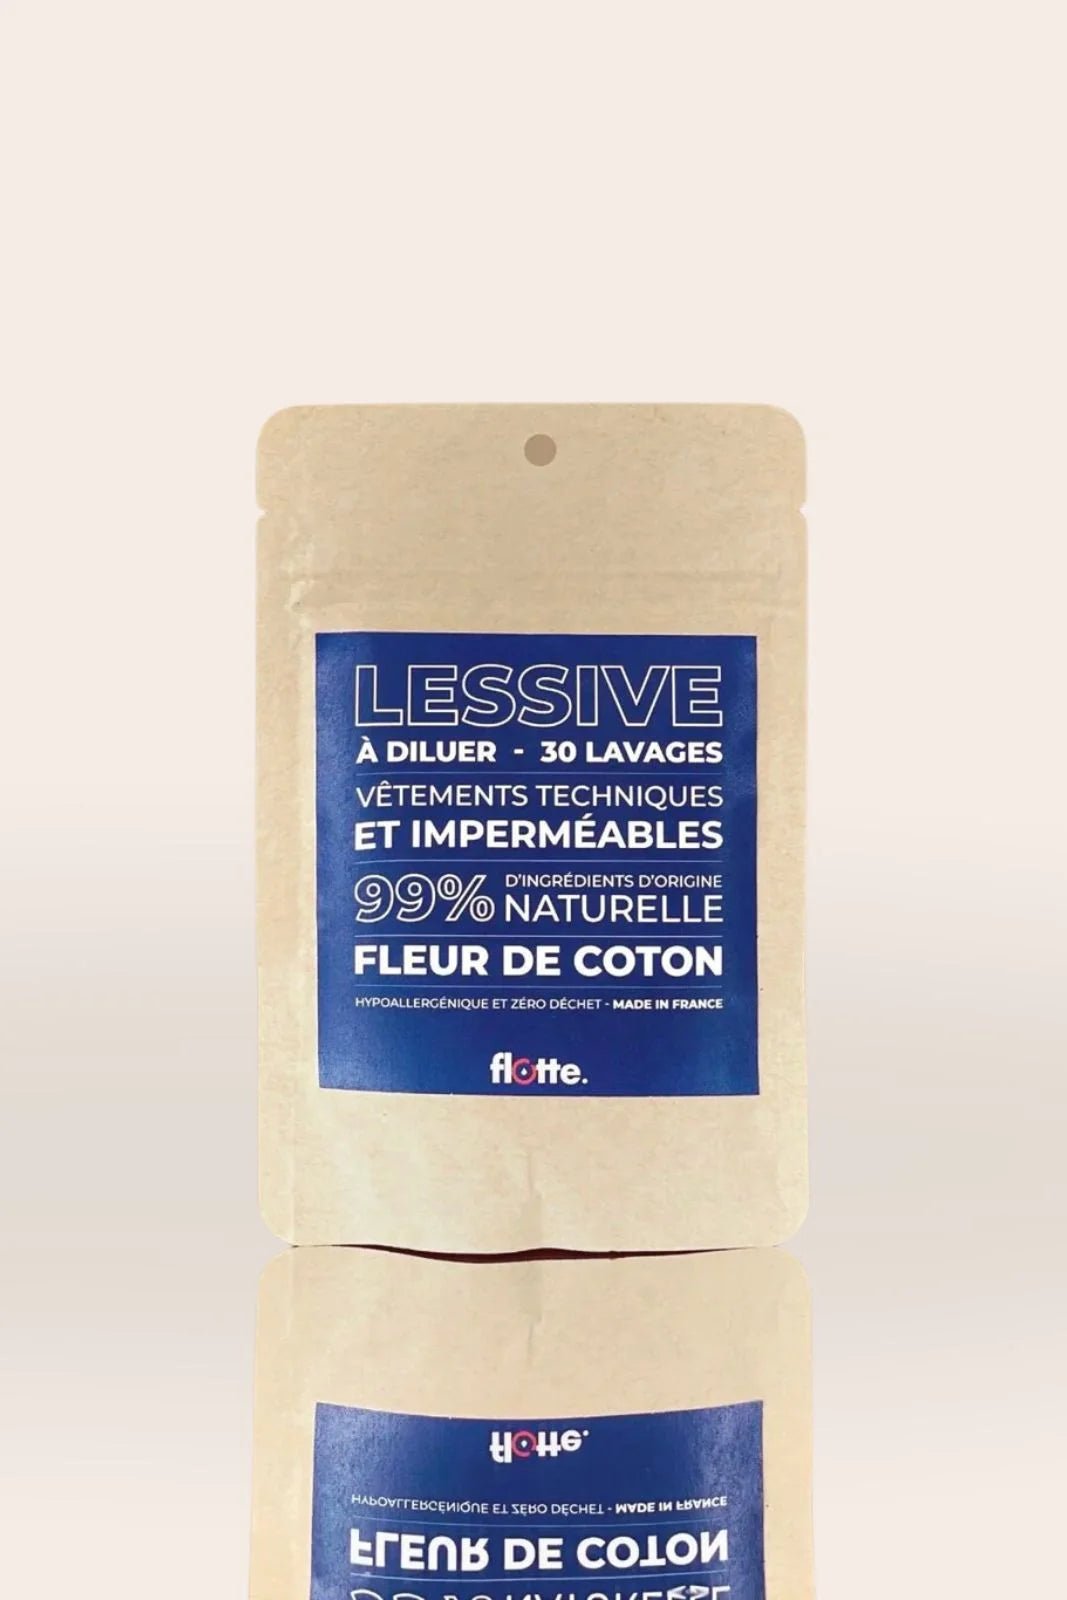 Outerwear detergent 1L - Flotte #couleur_fleur-de-coton